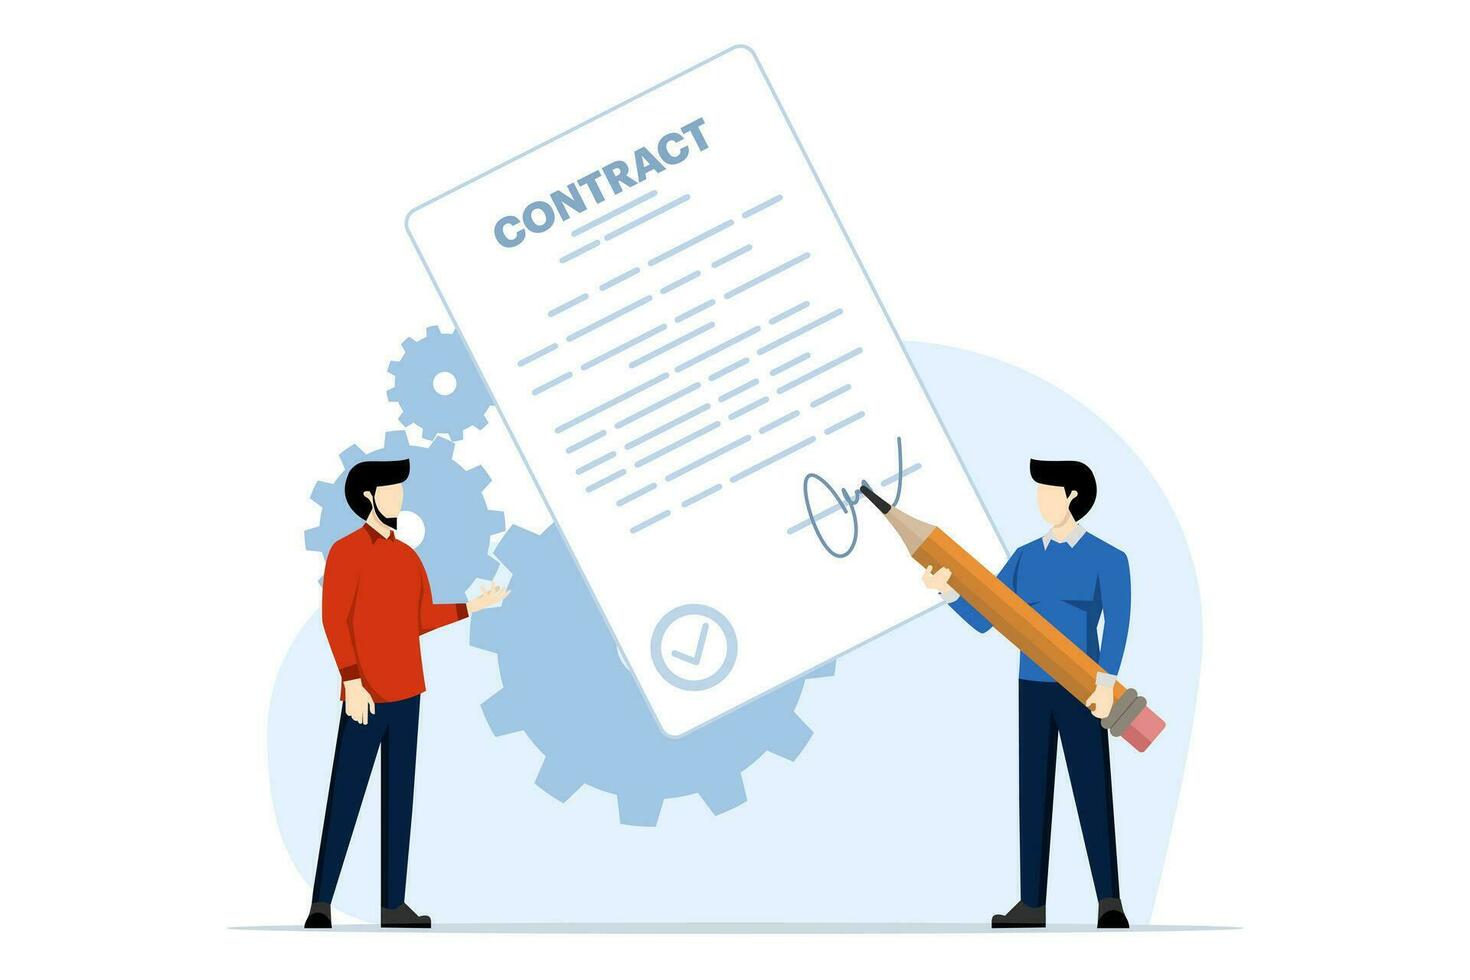 företag kontrakt begrepp, avtal illustration, lagarbete och samarbete, partnerskap, företag börja strategi, kontrakt avtal signering tecken. platt vektor illustration på bakgrund.